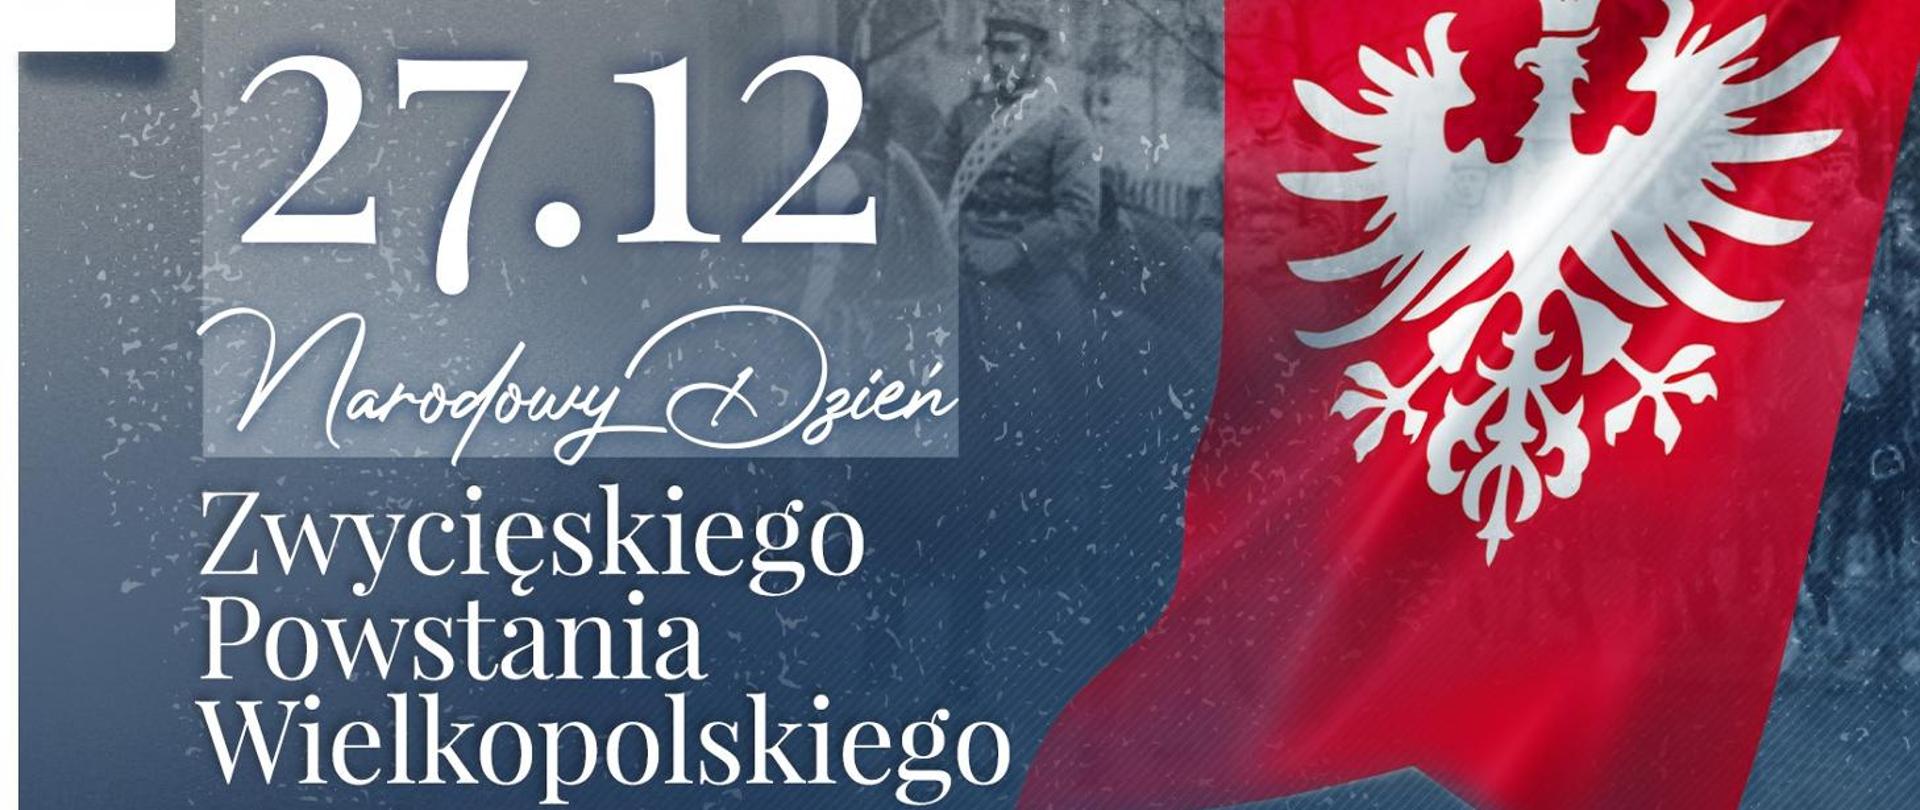 Napis 27.12 Narodowy Dzień Zwycięskiego Powstania Wielkopolskiego na szarym tle z prześwitem starej fotografii przedstawiającej ułanów na koniach. Z prawej strony grafiki znajduje się flaga Powstania Wielkopolskiego.